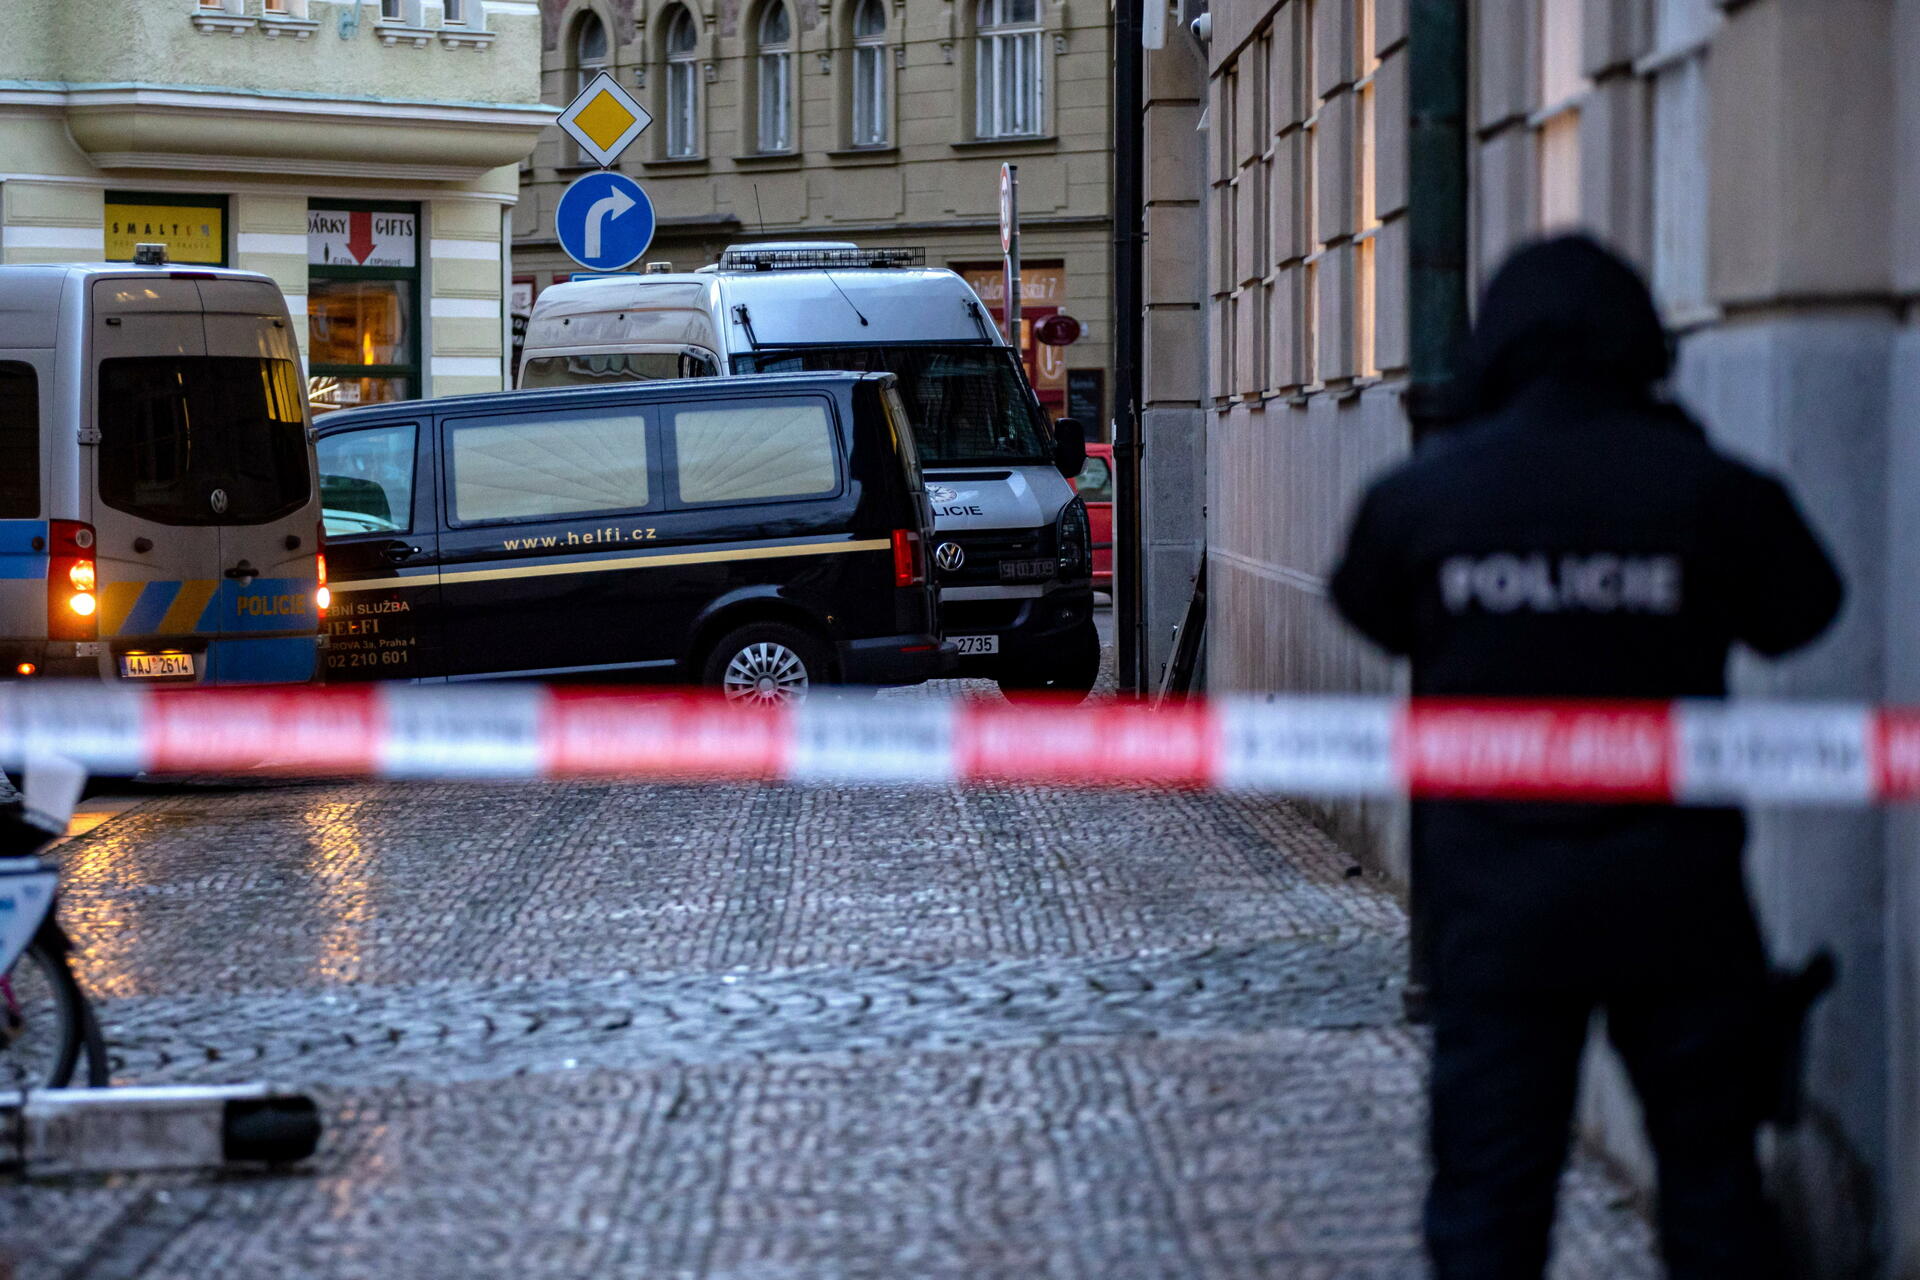 Este tiroteo ocurrido en Praga es el más grave en la historia de República Checa.